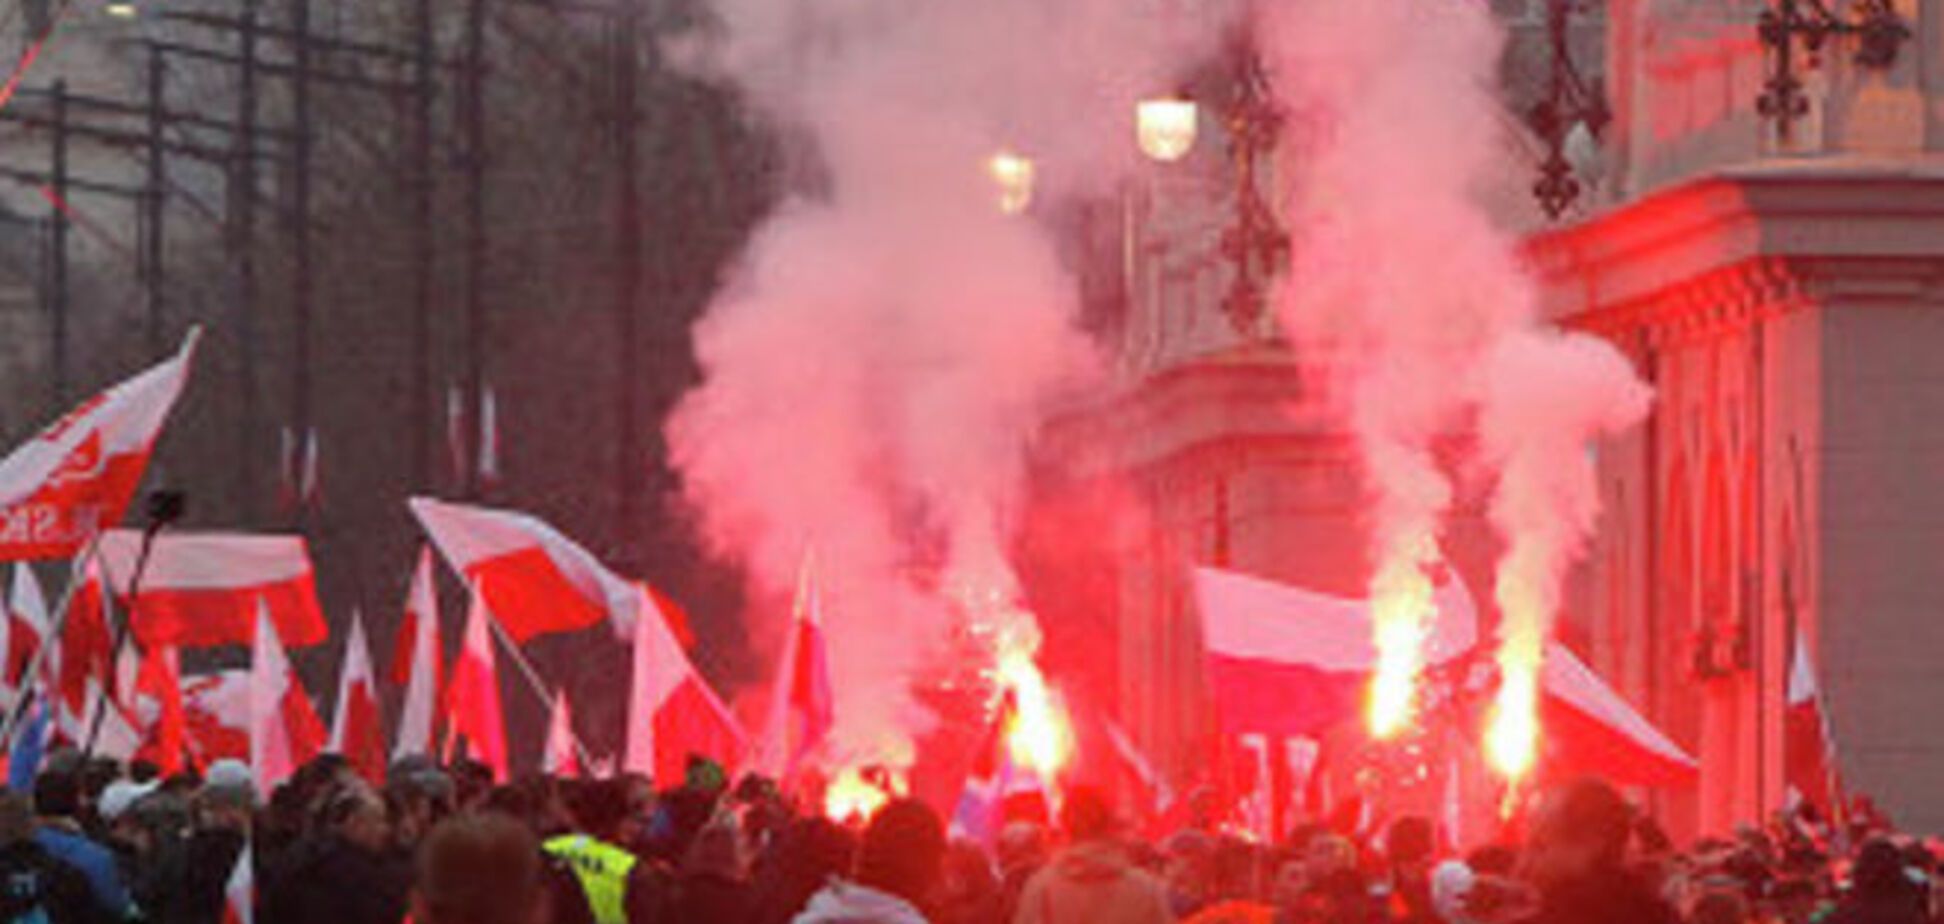 В Польше футбольный матч закончился смертью и массовыми беспорядками